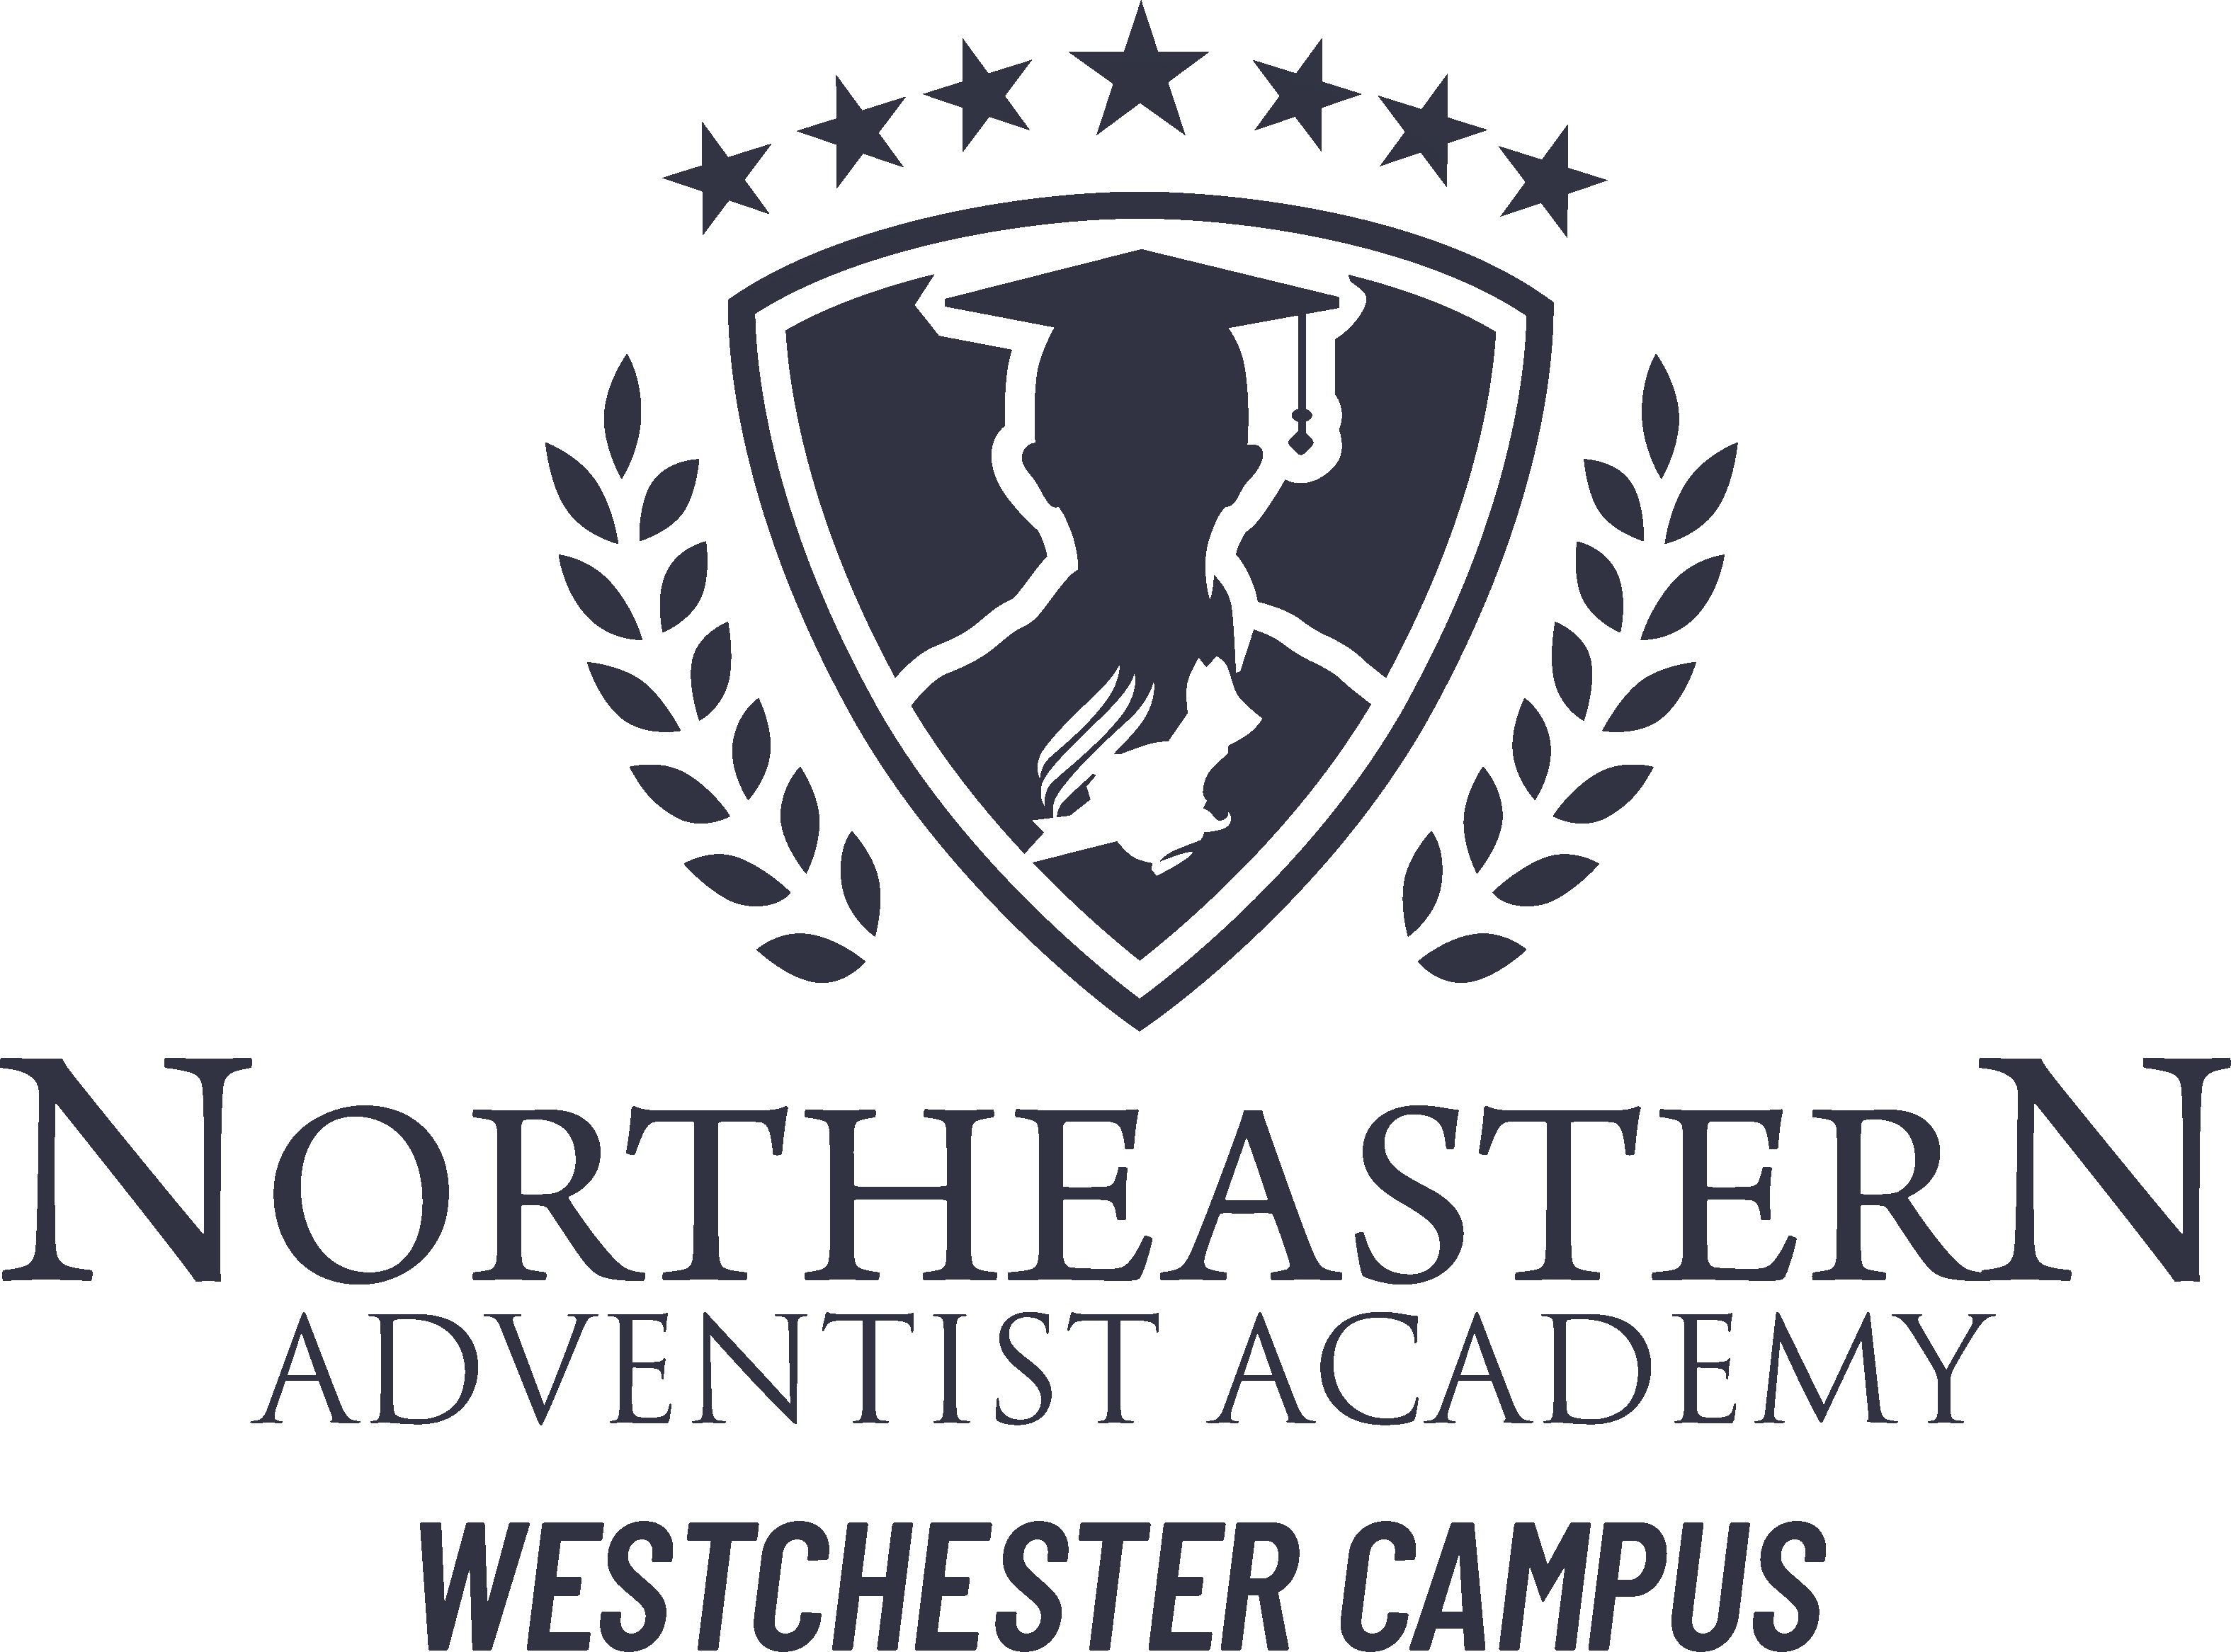 Northeastern Adventist Academy